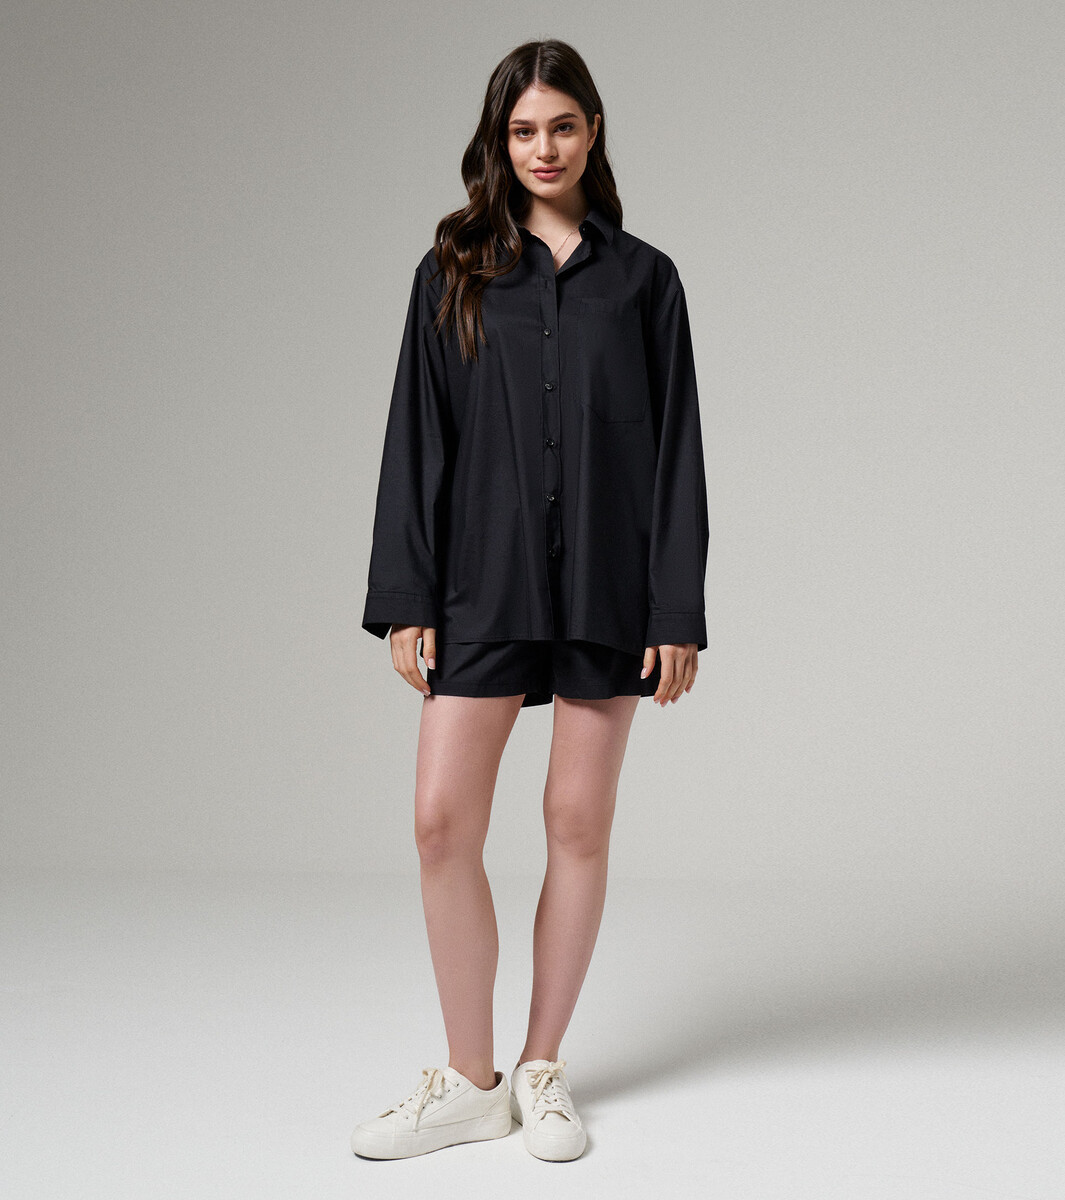 Комплект женский (блузка, шорты) Panda, размер 42, цвет черный 010491623 - фото 3